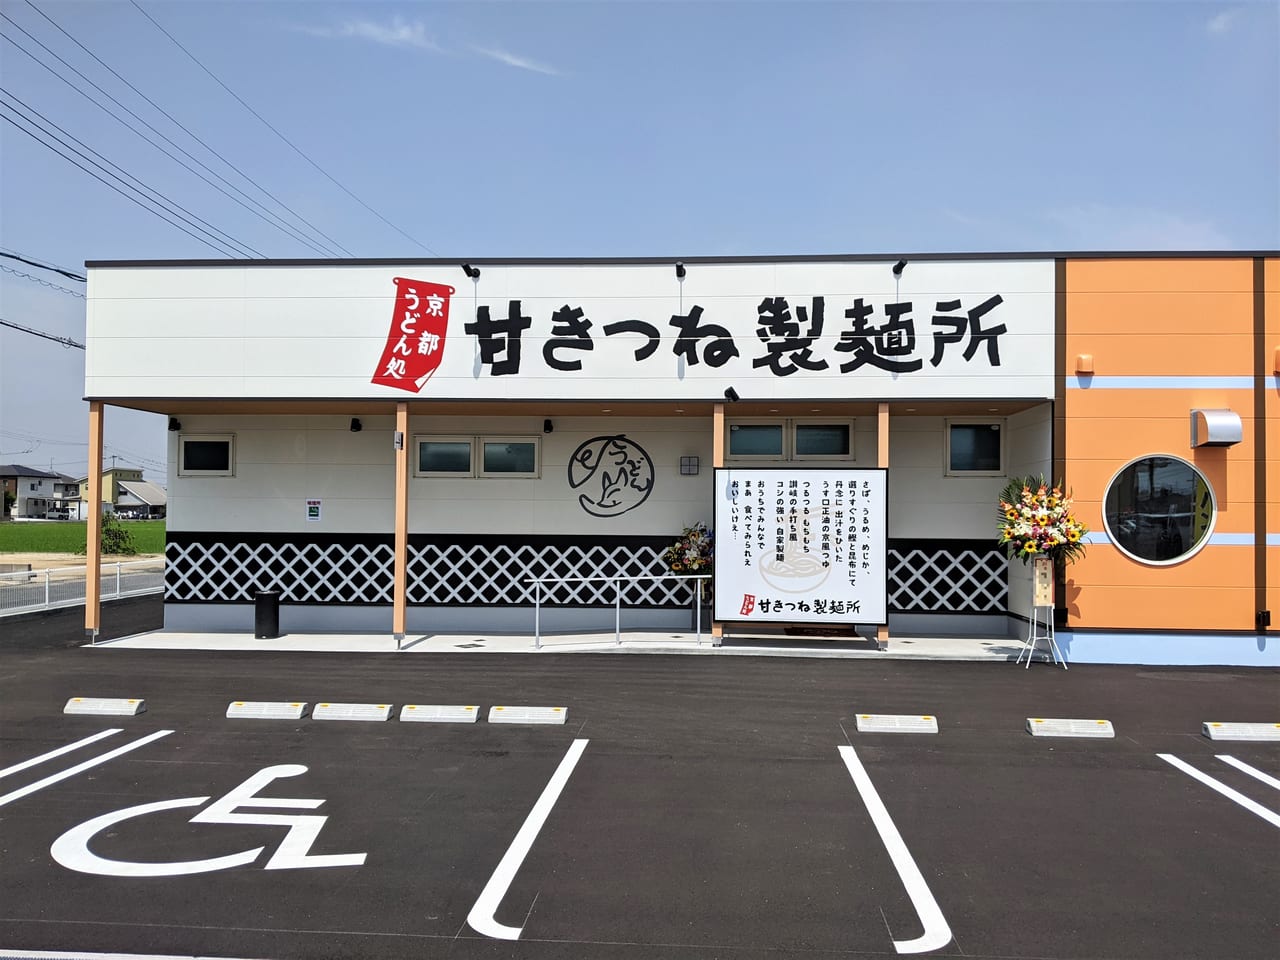 「京都うどん処甘きつね製麺所」の外観